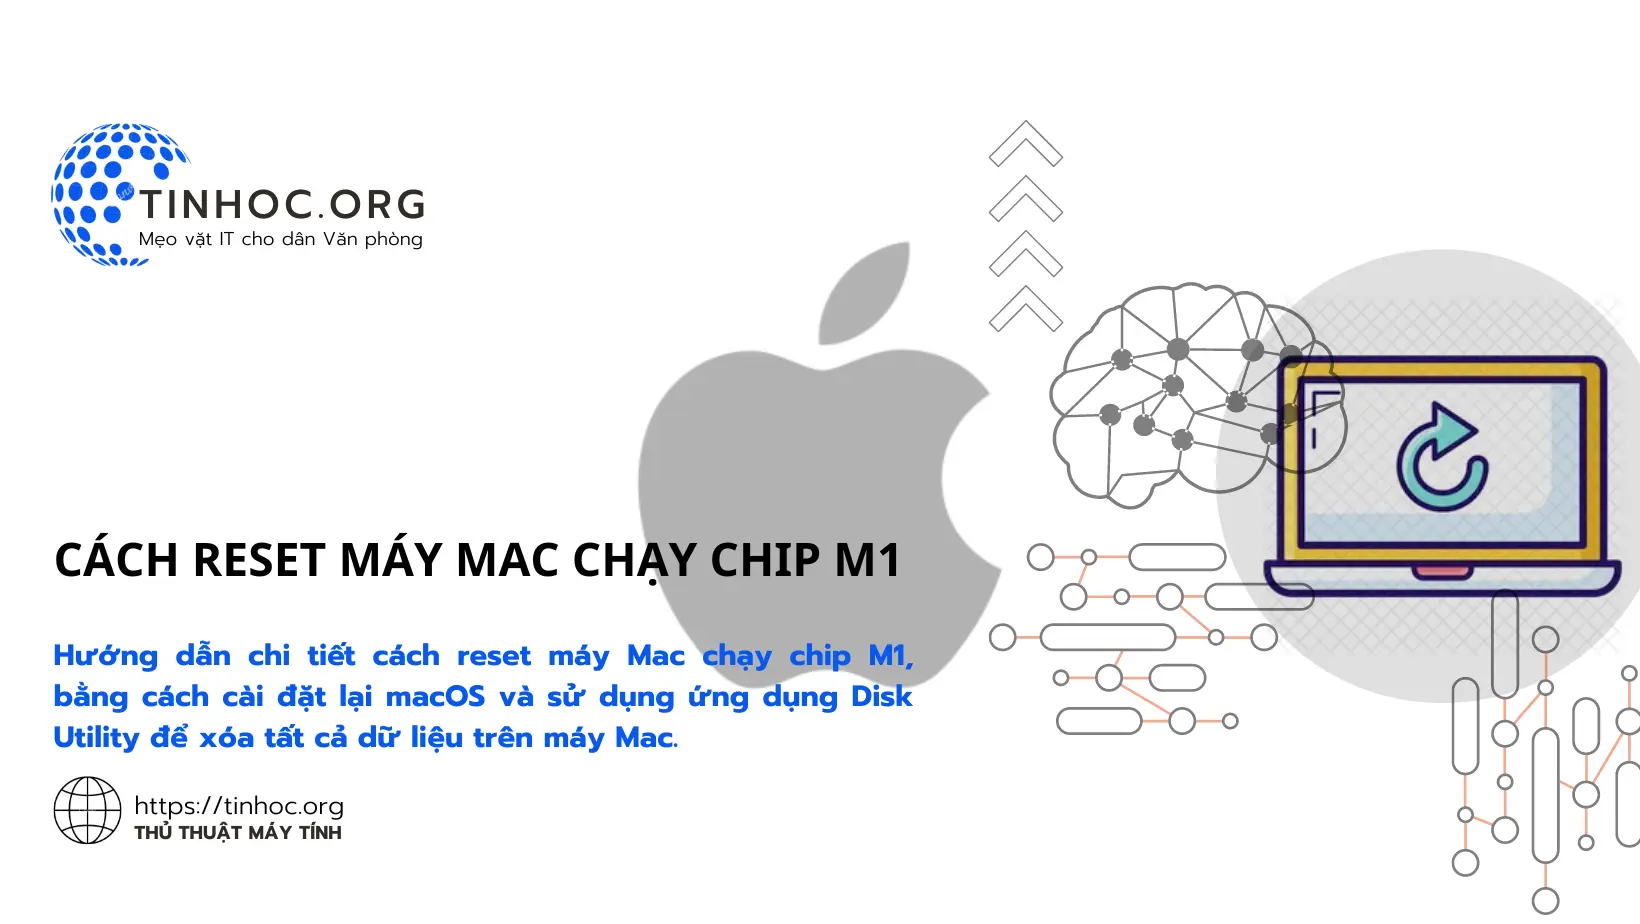 Hướng dẫn chi tiết cách reset máy Mac chạy chip M1, bằng cách cài đặt lại macOS và sử dụng ứng dụng Disk Utility để xóa tất cả dữ liệu trên máy Mac.